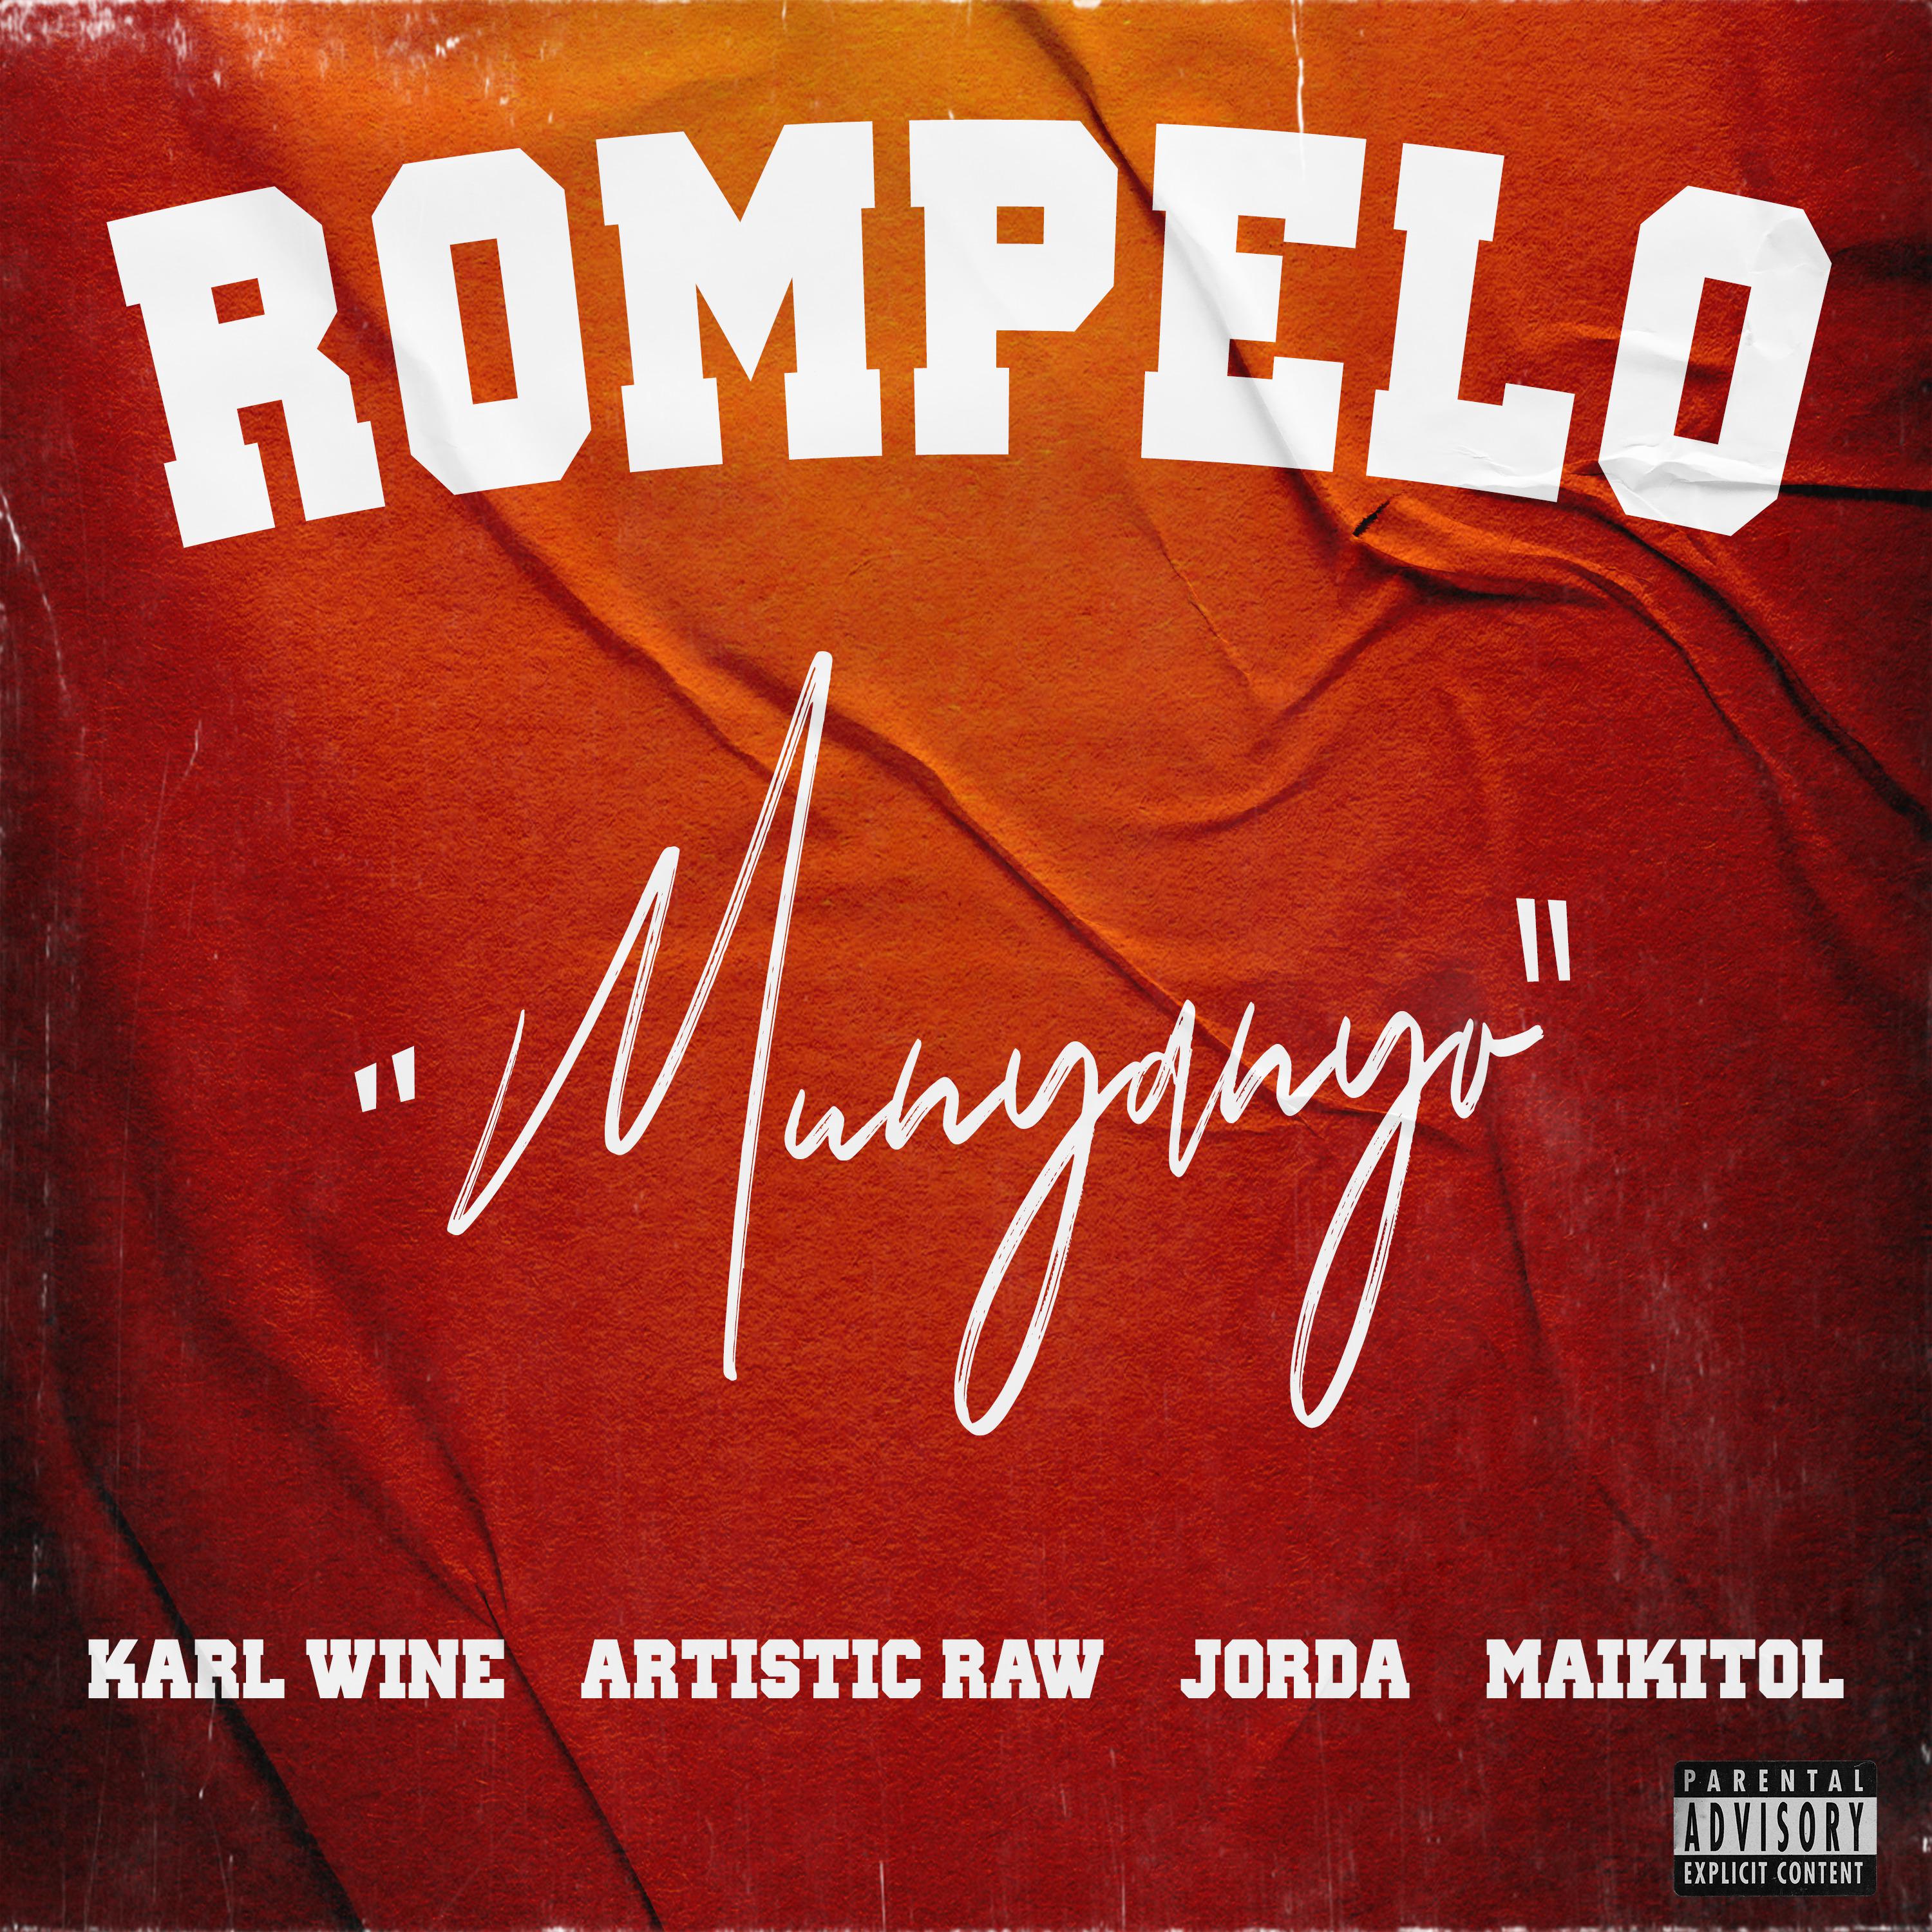 Karl Wine - Rompelo (Munyanyo)